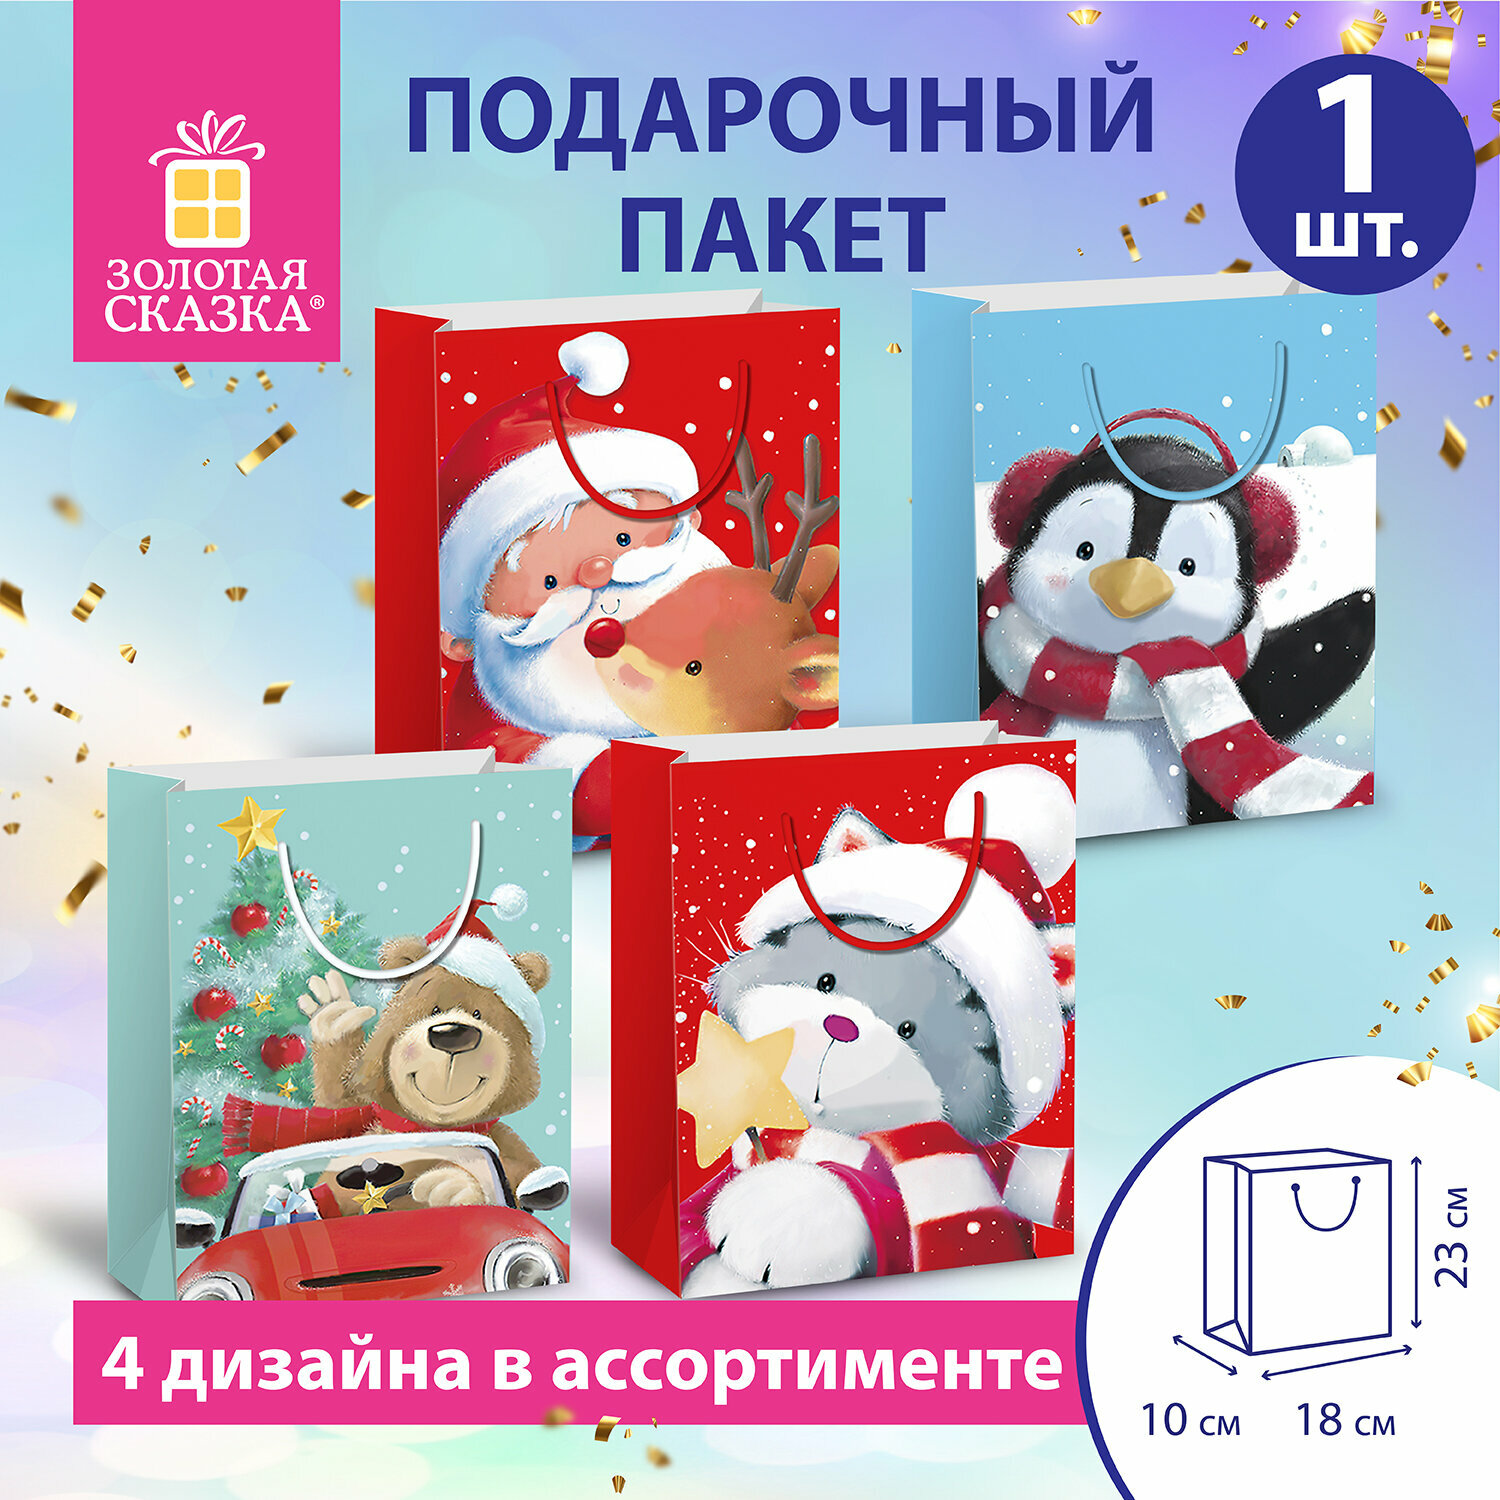 Пакет подарочный(1штука) новогодний 18х10х23см,"Christmas Animals", ассорти, золотая сказка, 591955